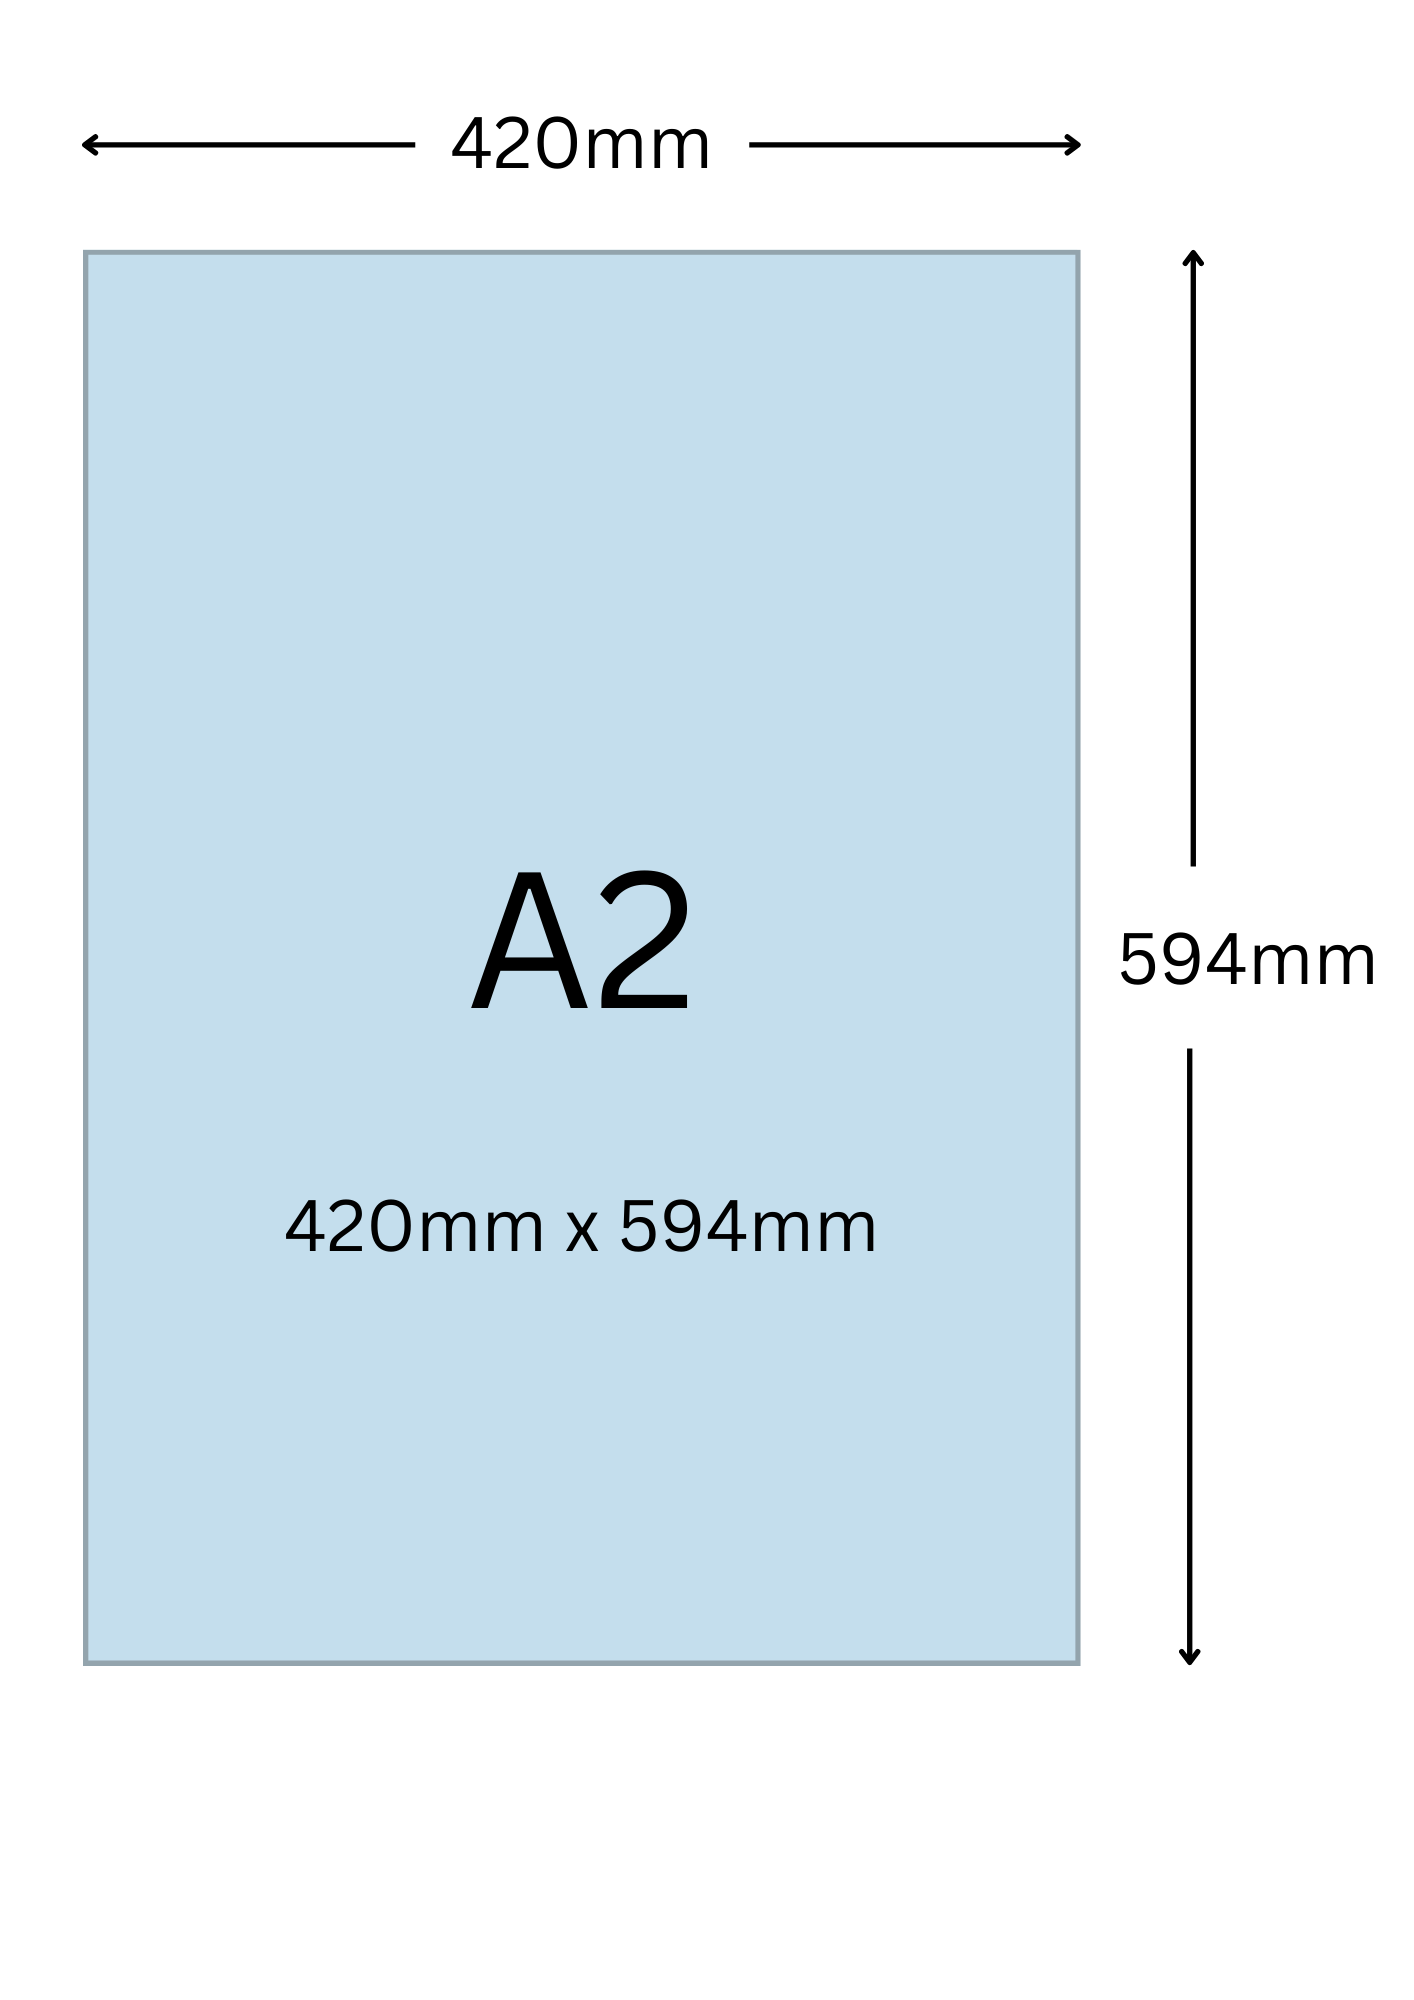 A2尺寸公分, A2紙張尺寸大小, A2紙張對應開數是幾開